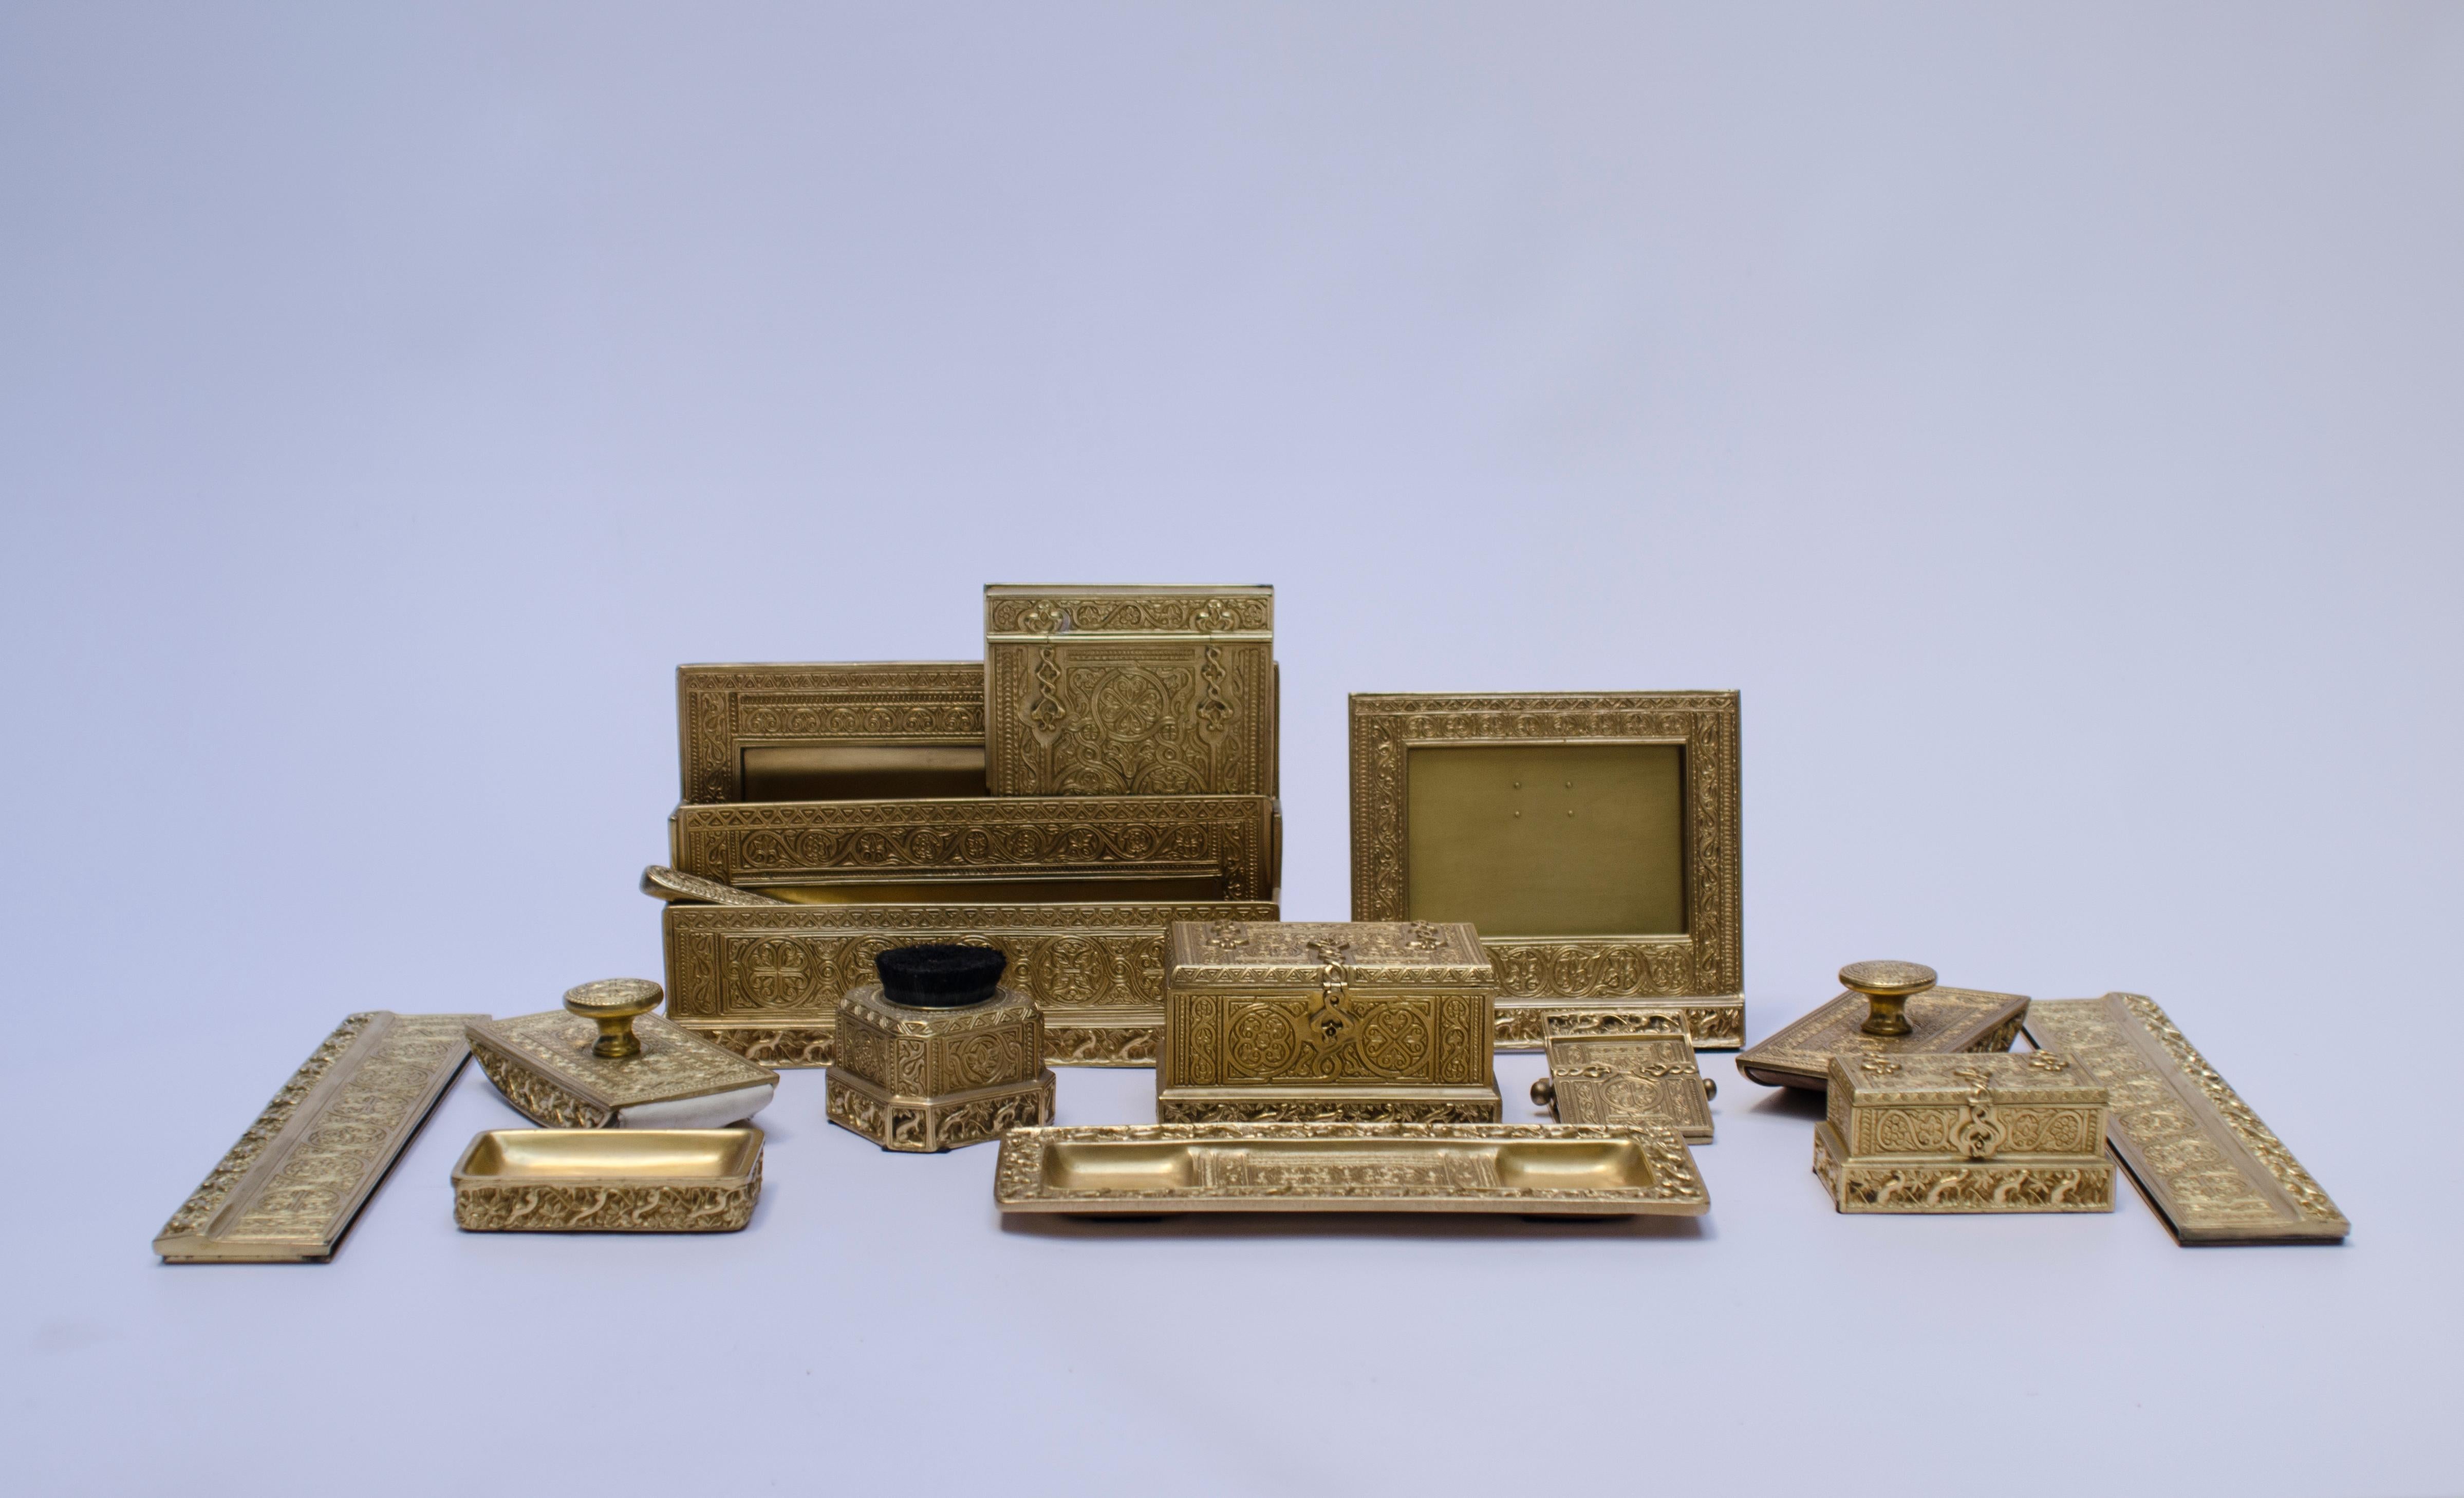 Schreibtischgarnitur aus vergoldeter Bronze (Ormolu), bestehend aus 14 